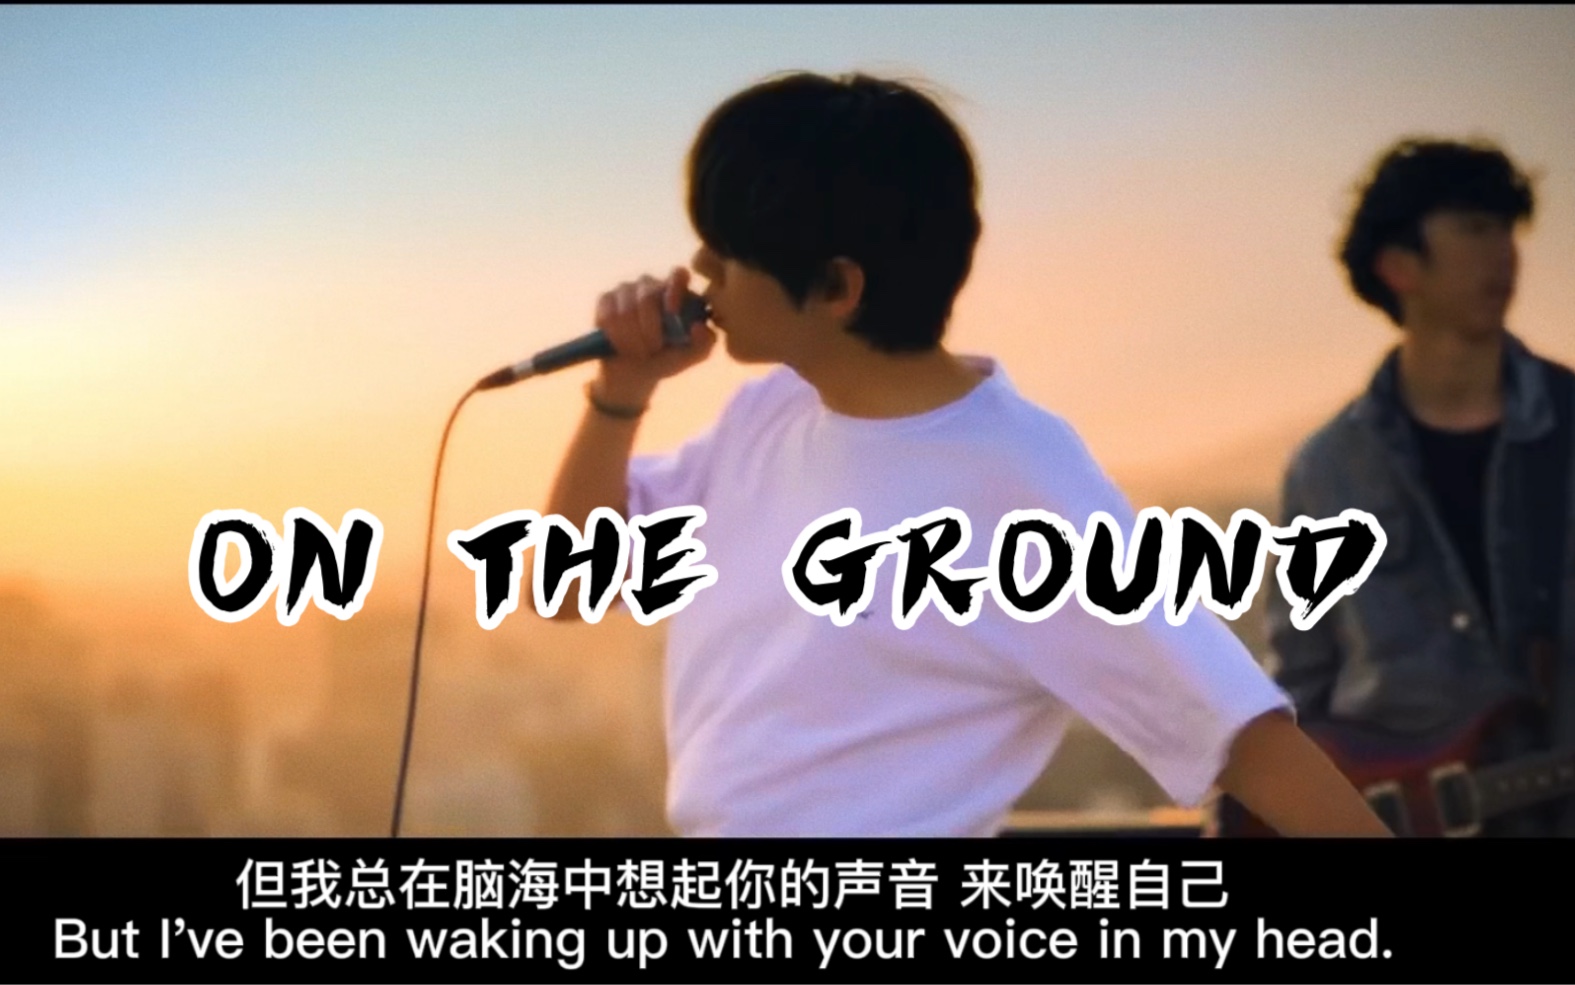 中英字幕 Gaho【 ON THE GROUND 】Cover 朴彩英 - R- 主打曲翻唱   BLACKPINK Main Vocal